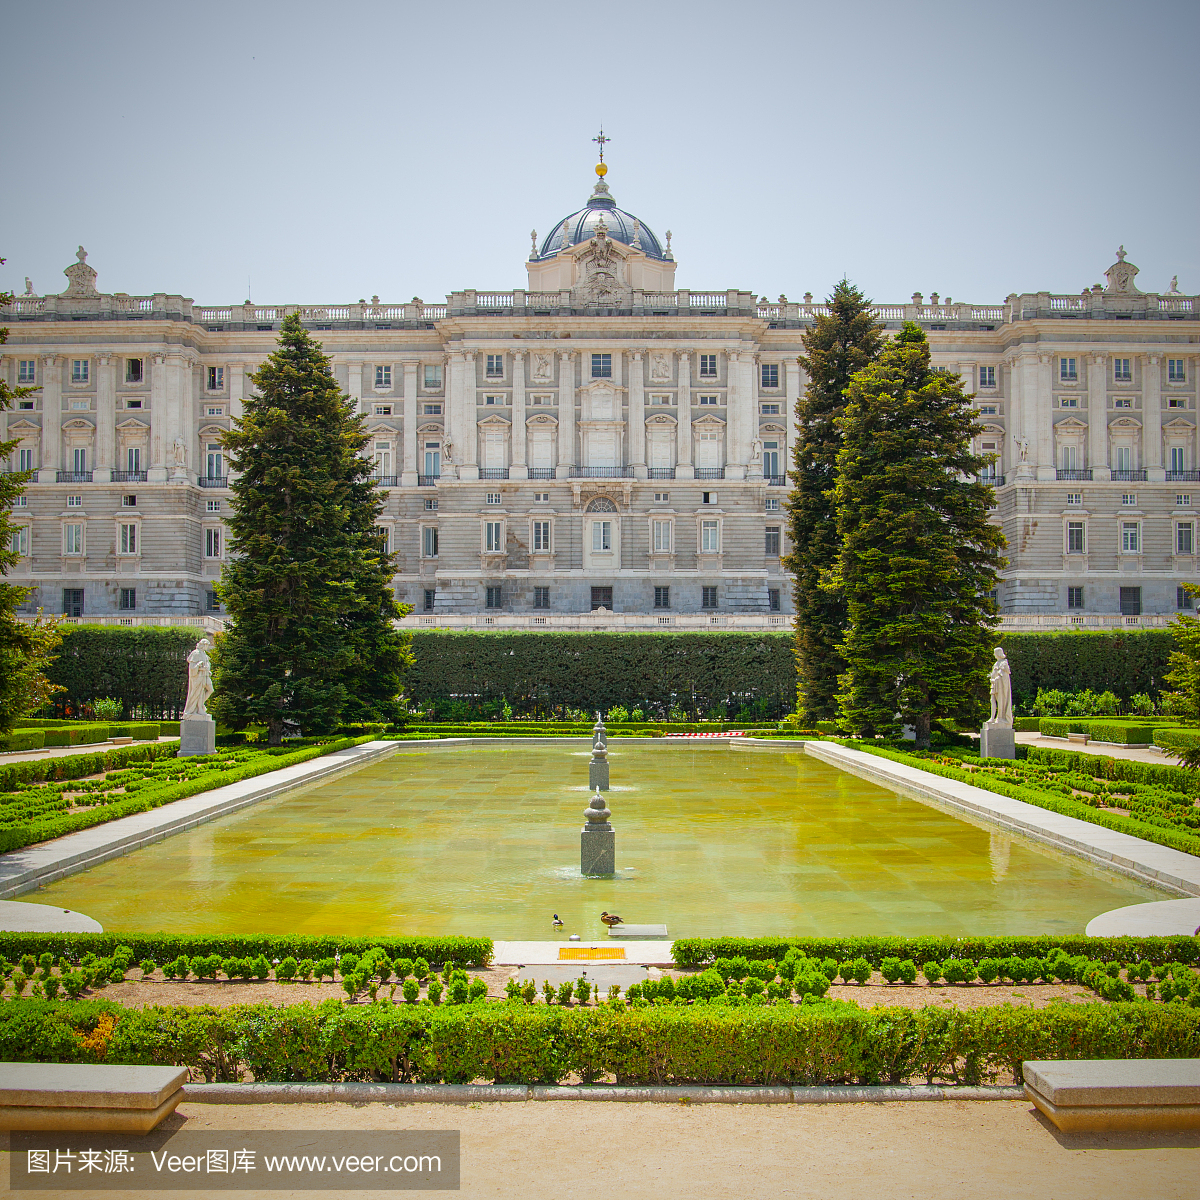 马德里皇宫,皇室,复古风格,巴洛克风格